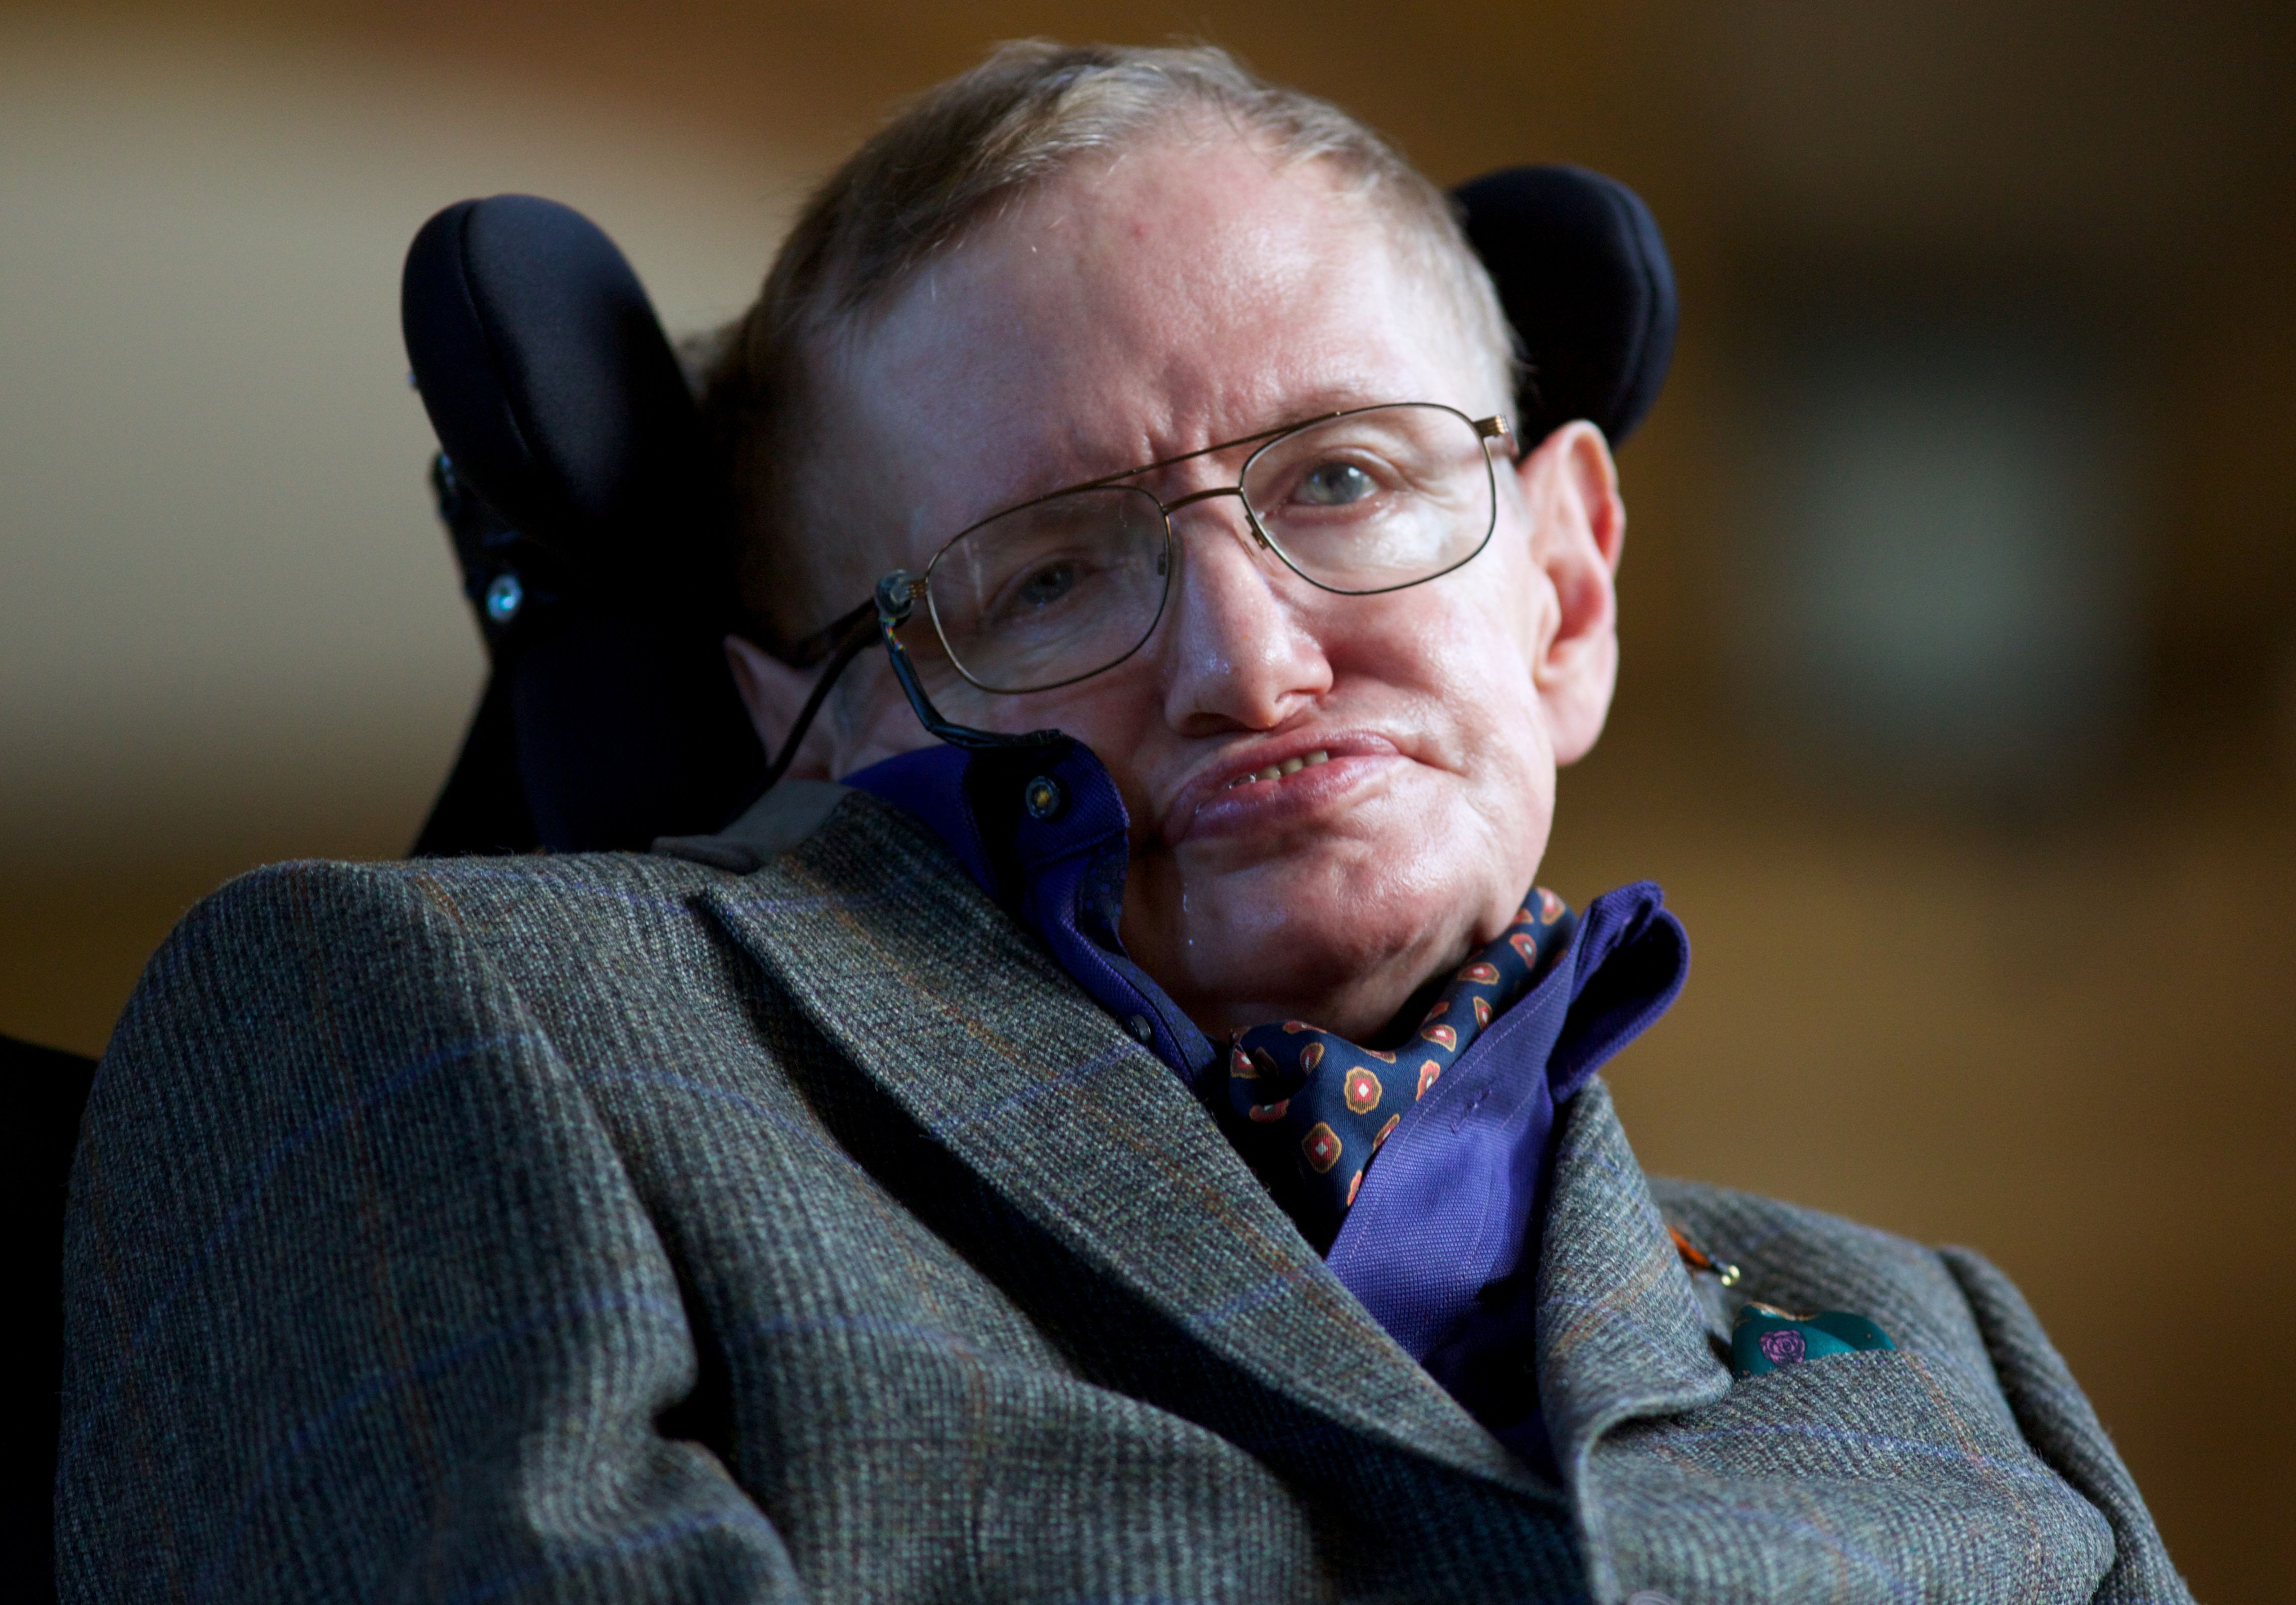 Stephen Hawking en 2013. (Foto: Hemeroteca PL)